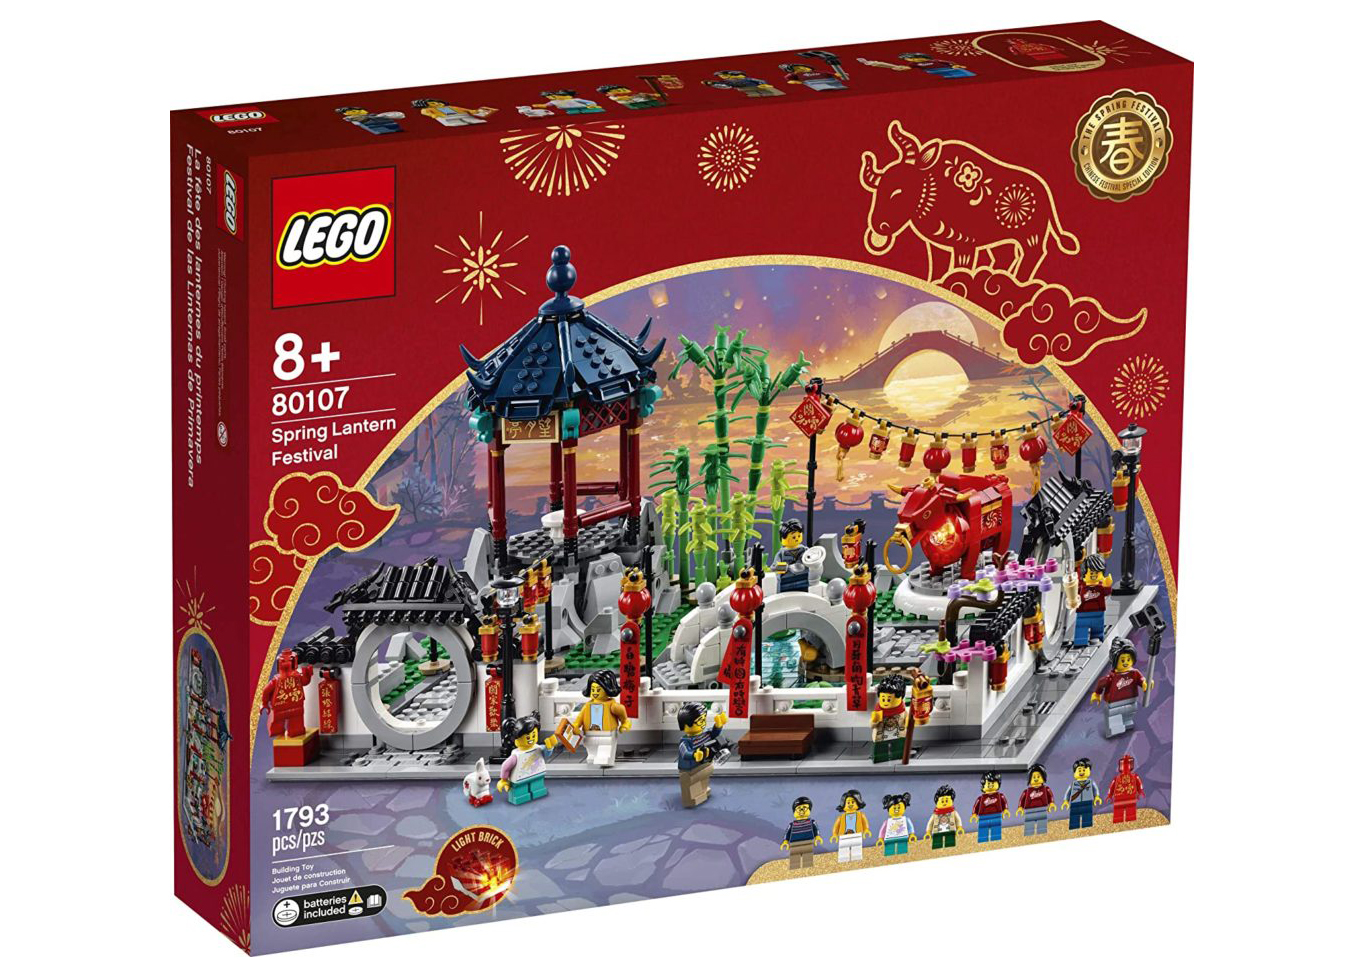 LEGO 80107 FIGURE Ox Guy New Year 2021 Spring Lantern Festival 